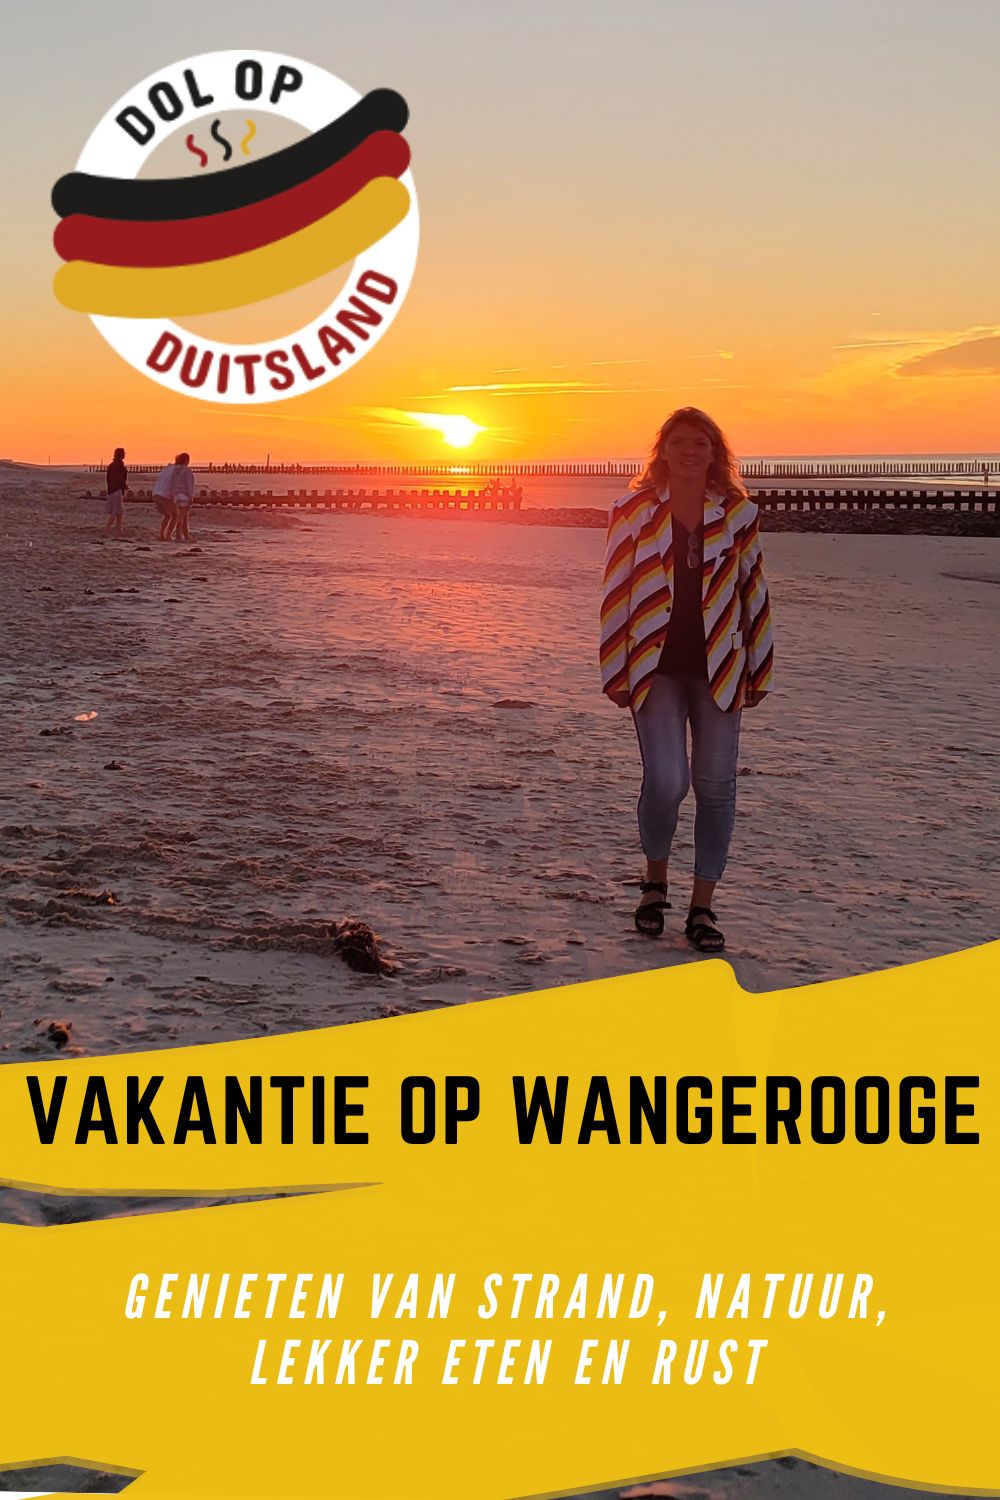 Bewaar de pin over Wangerooge op Pinterest